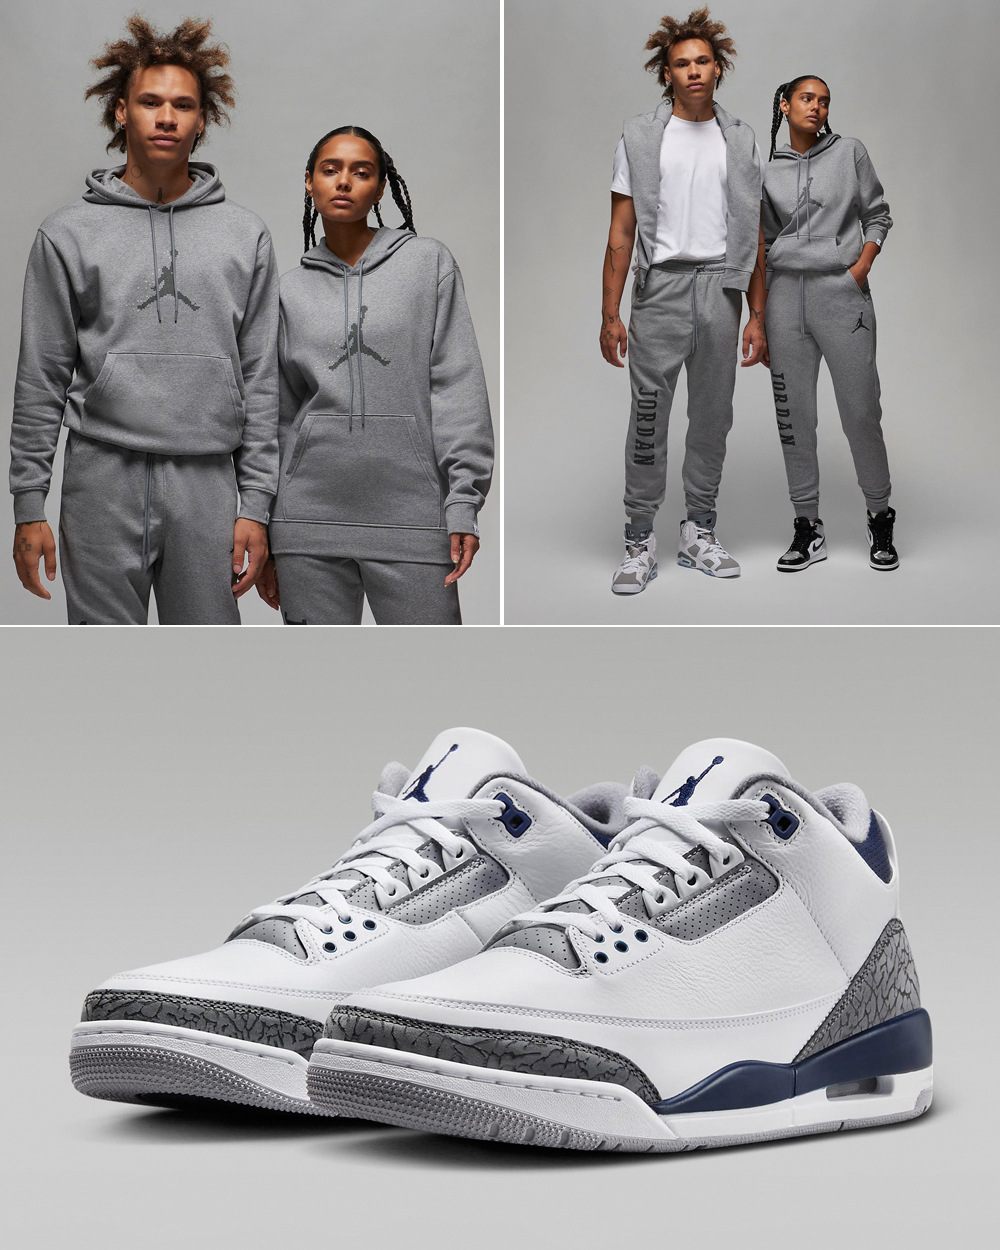 Air-Jordan-3-Midnight-Navy-Cement-Grey-Hoodie-Pants-Outfit